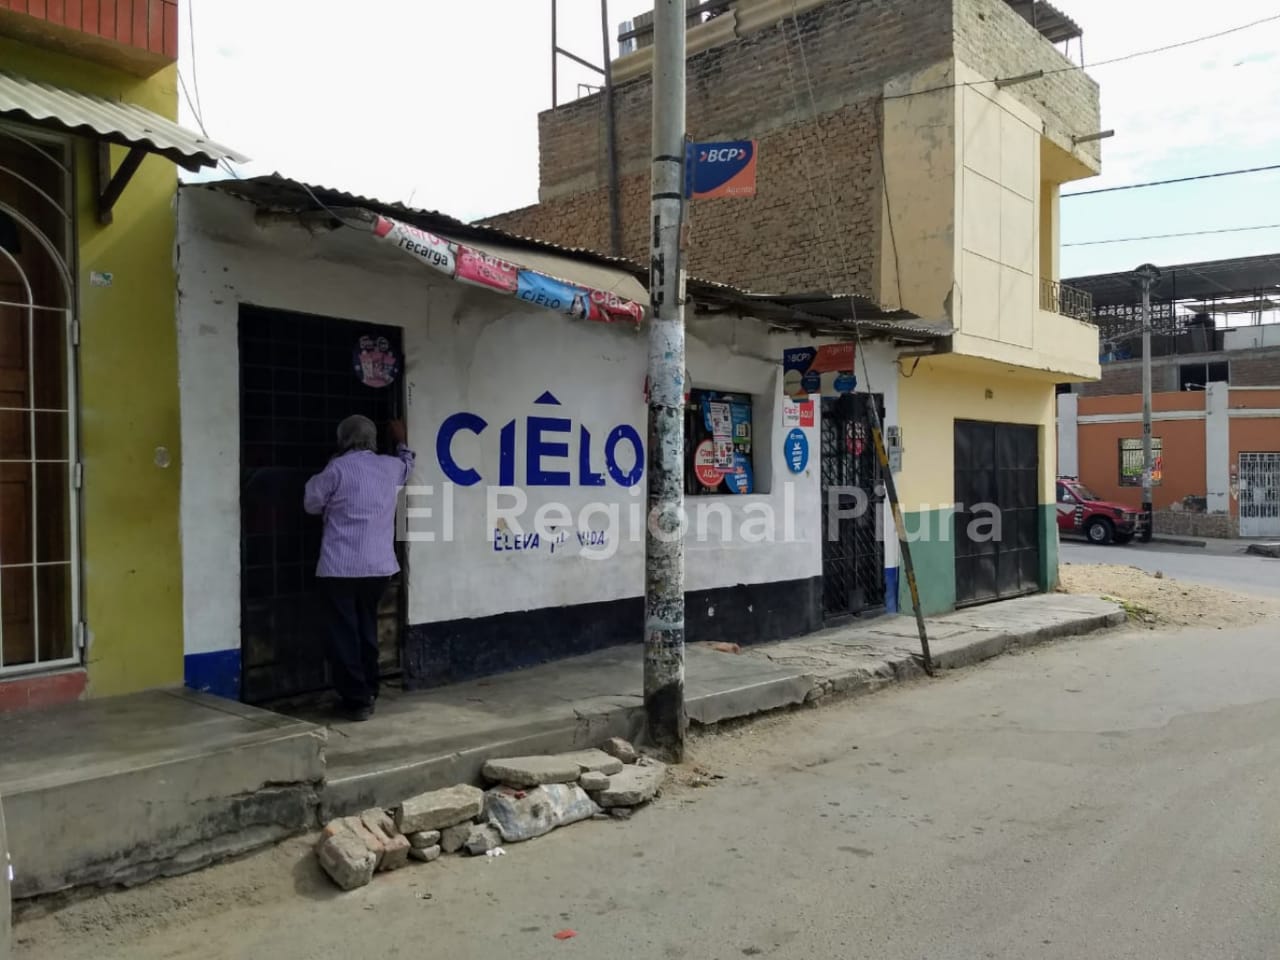 Asaltan tienda y se llevan 3 mil soles de agente del Banco de Crédito del Perú